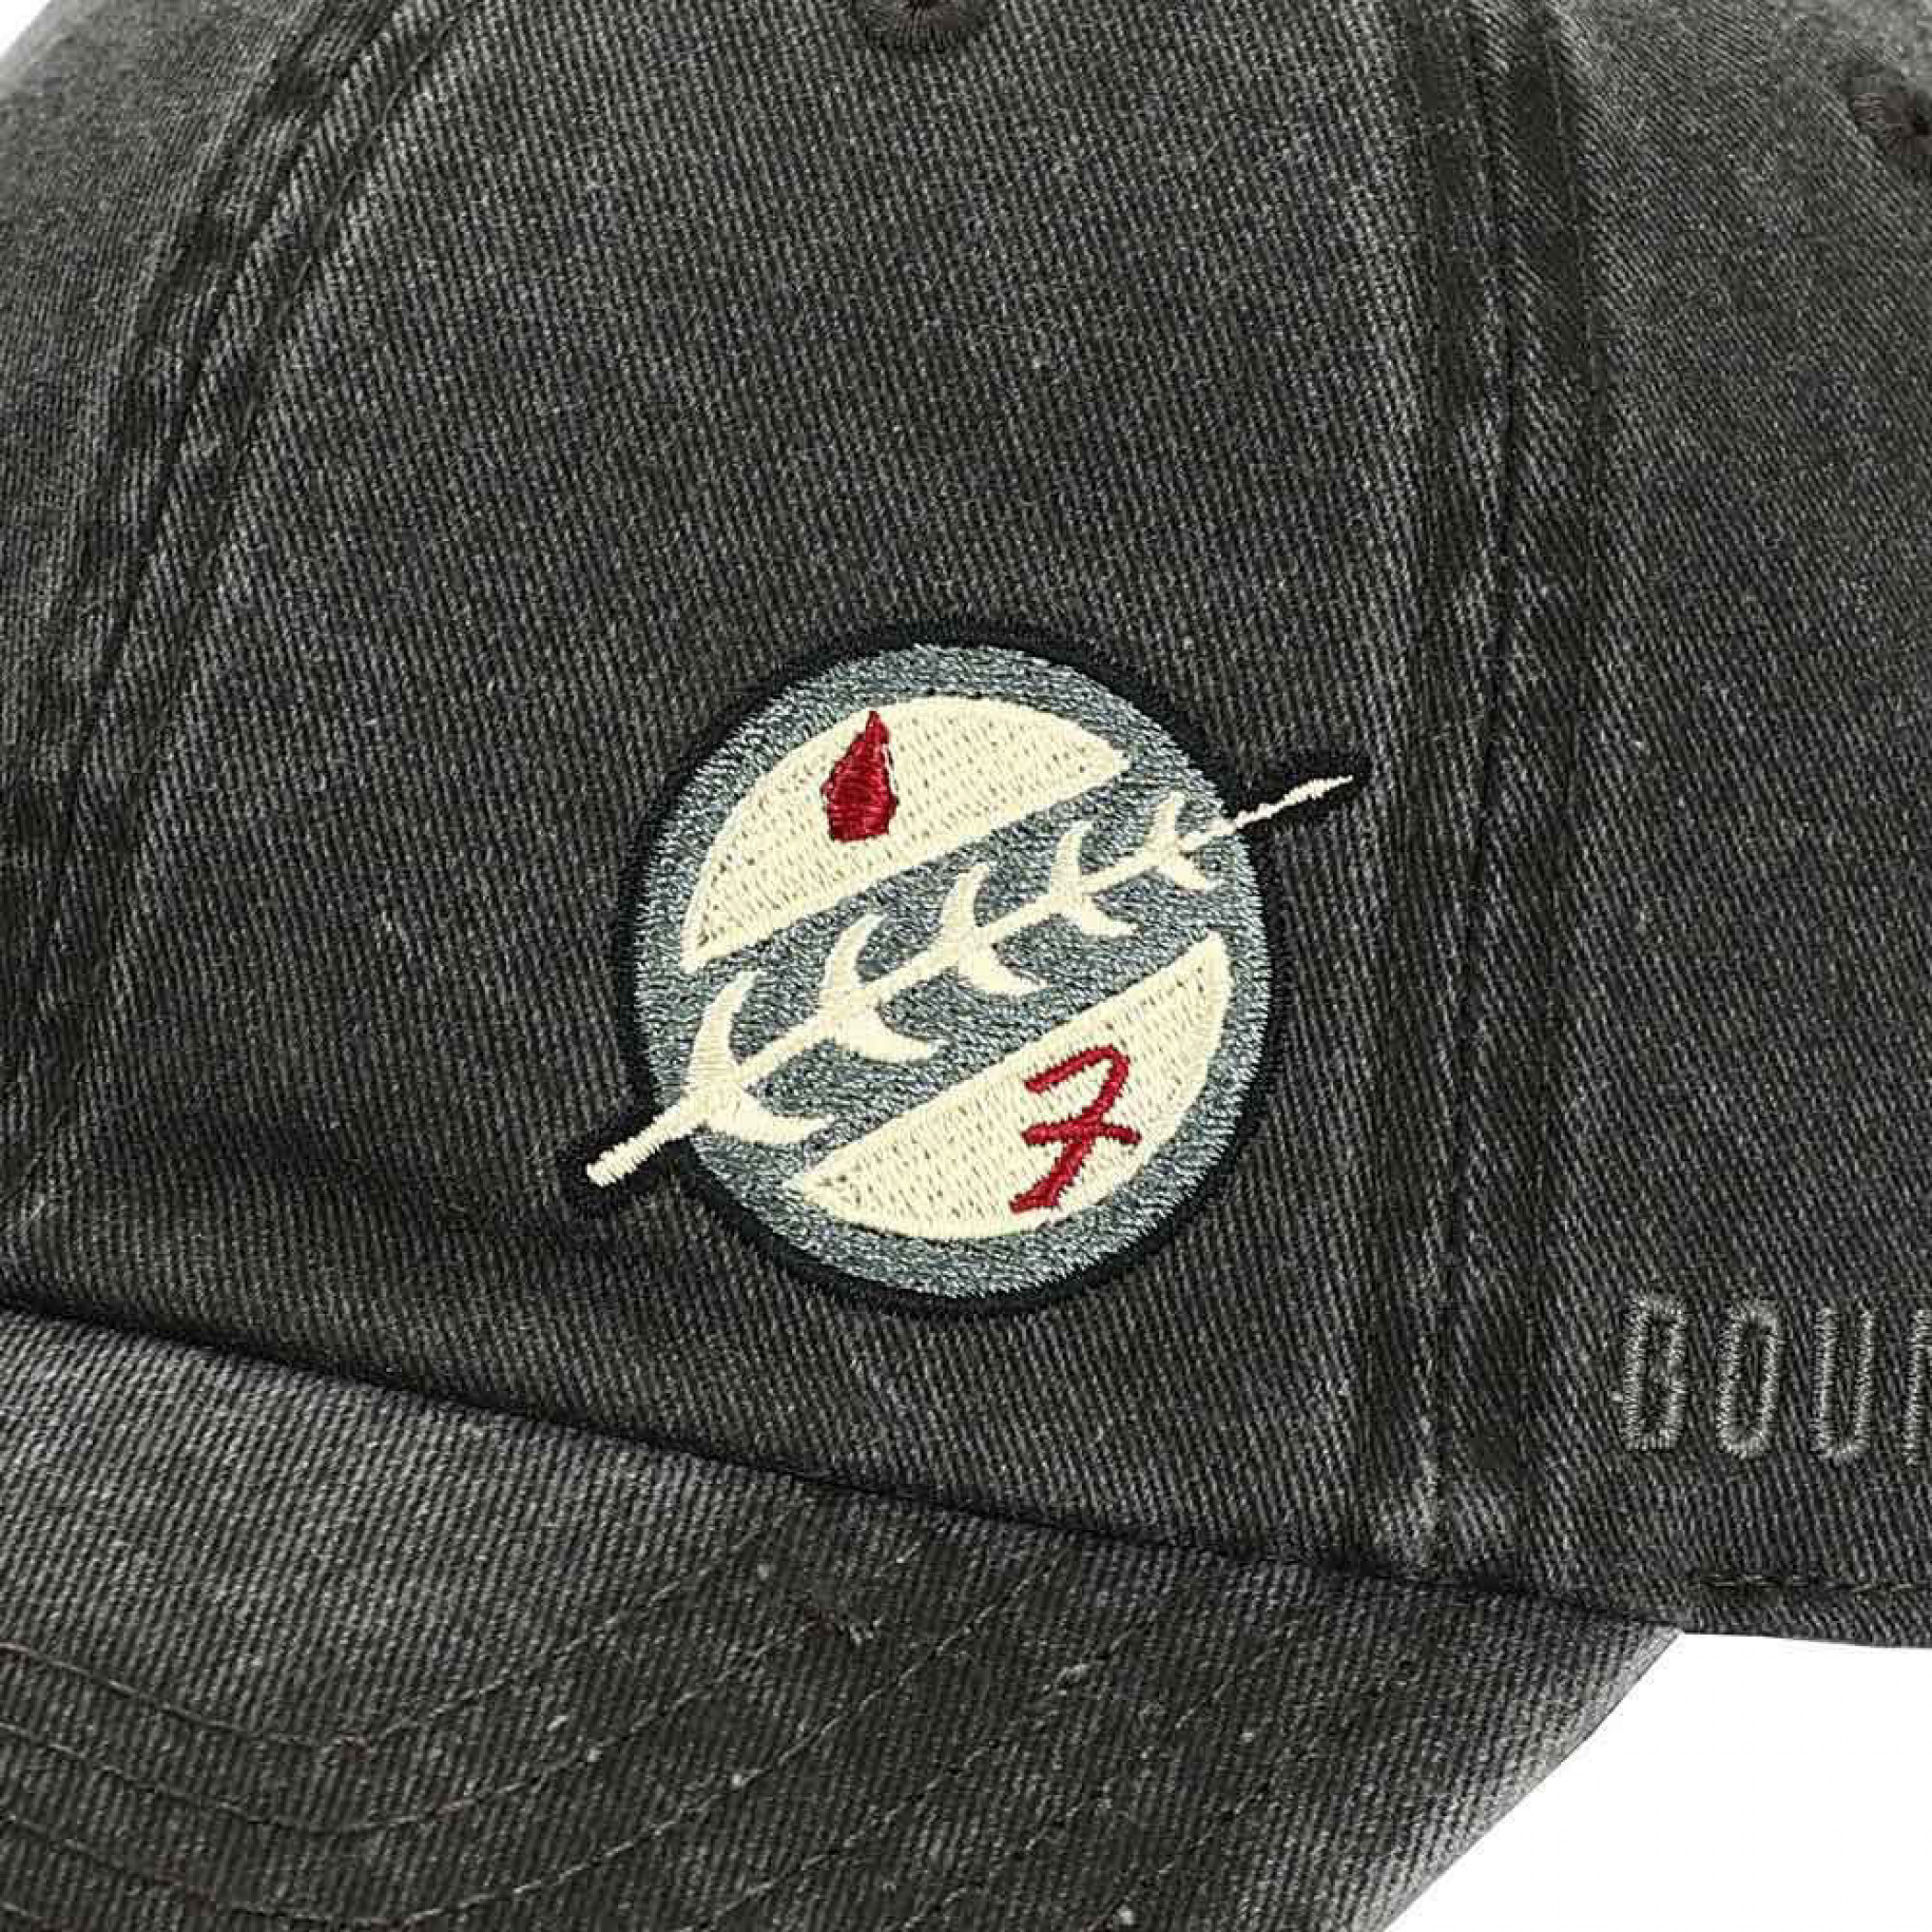 Star Wars Boba Fett Episode 5 Embroidered Adjustable Cap